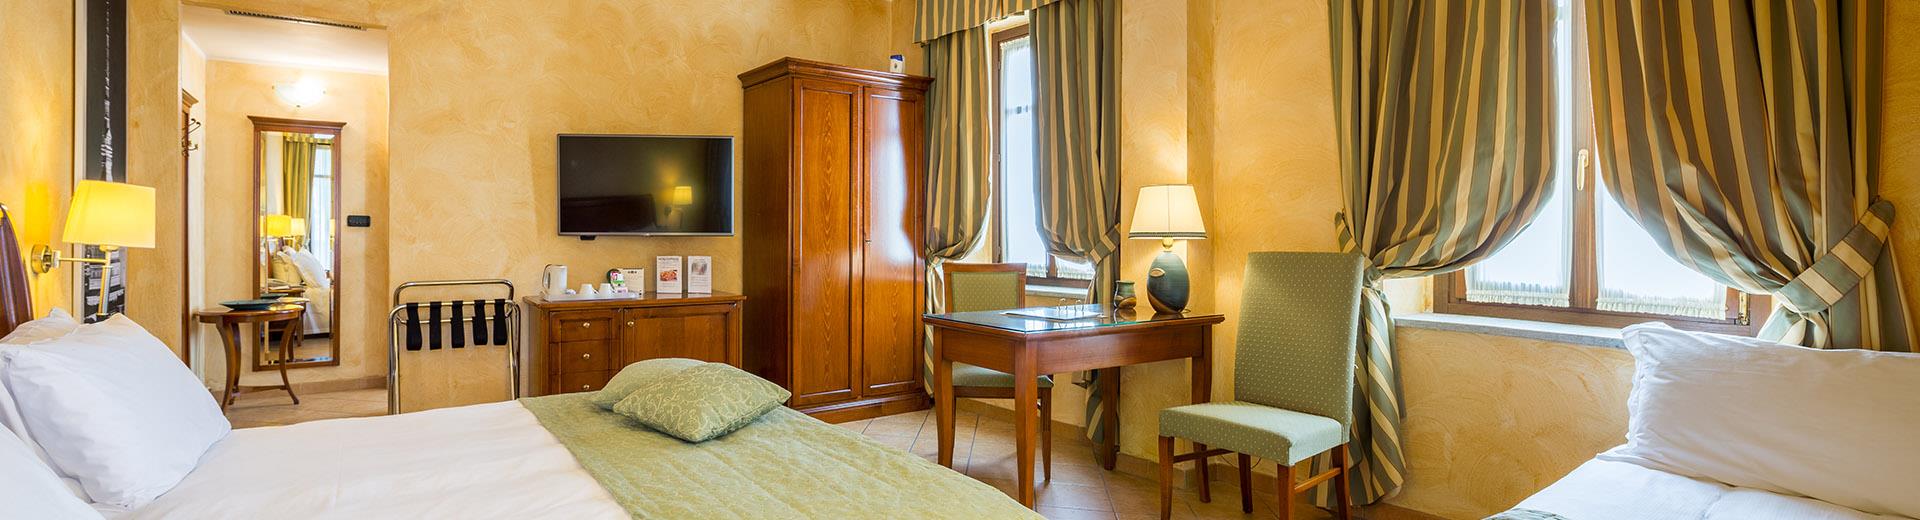 Sobrie ed eleganti, le camere del Best Western Plus Hotel Le Rondini Torino rispecchiano lo stile dell antico casale e rendono il tuo soggiorno un esperienza indimenticabile.